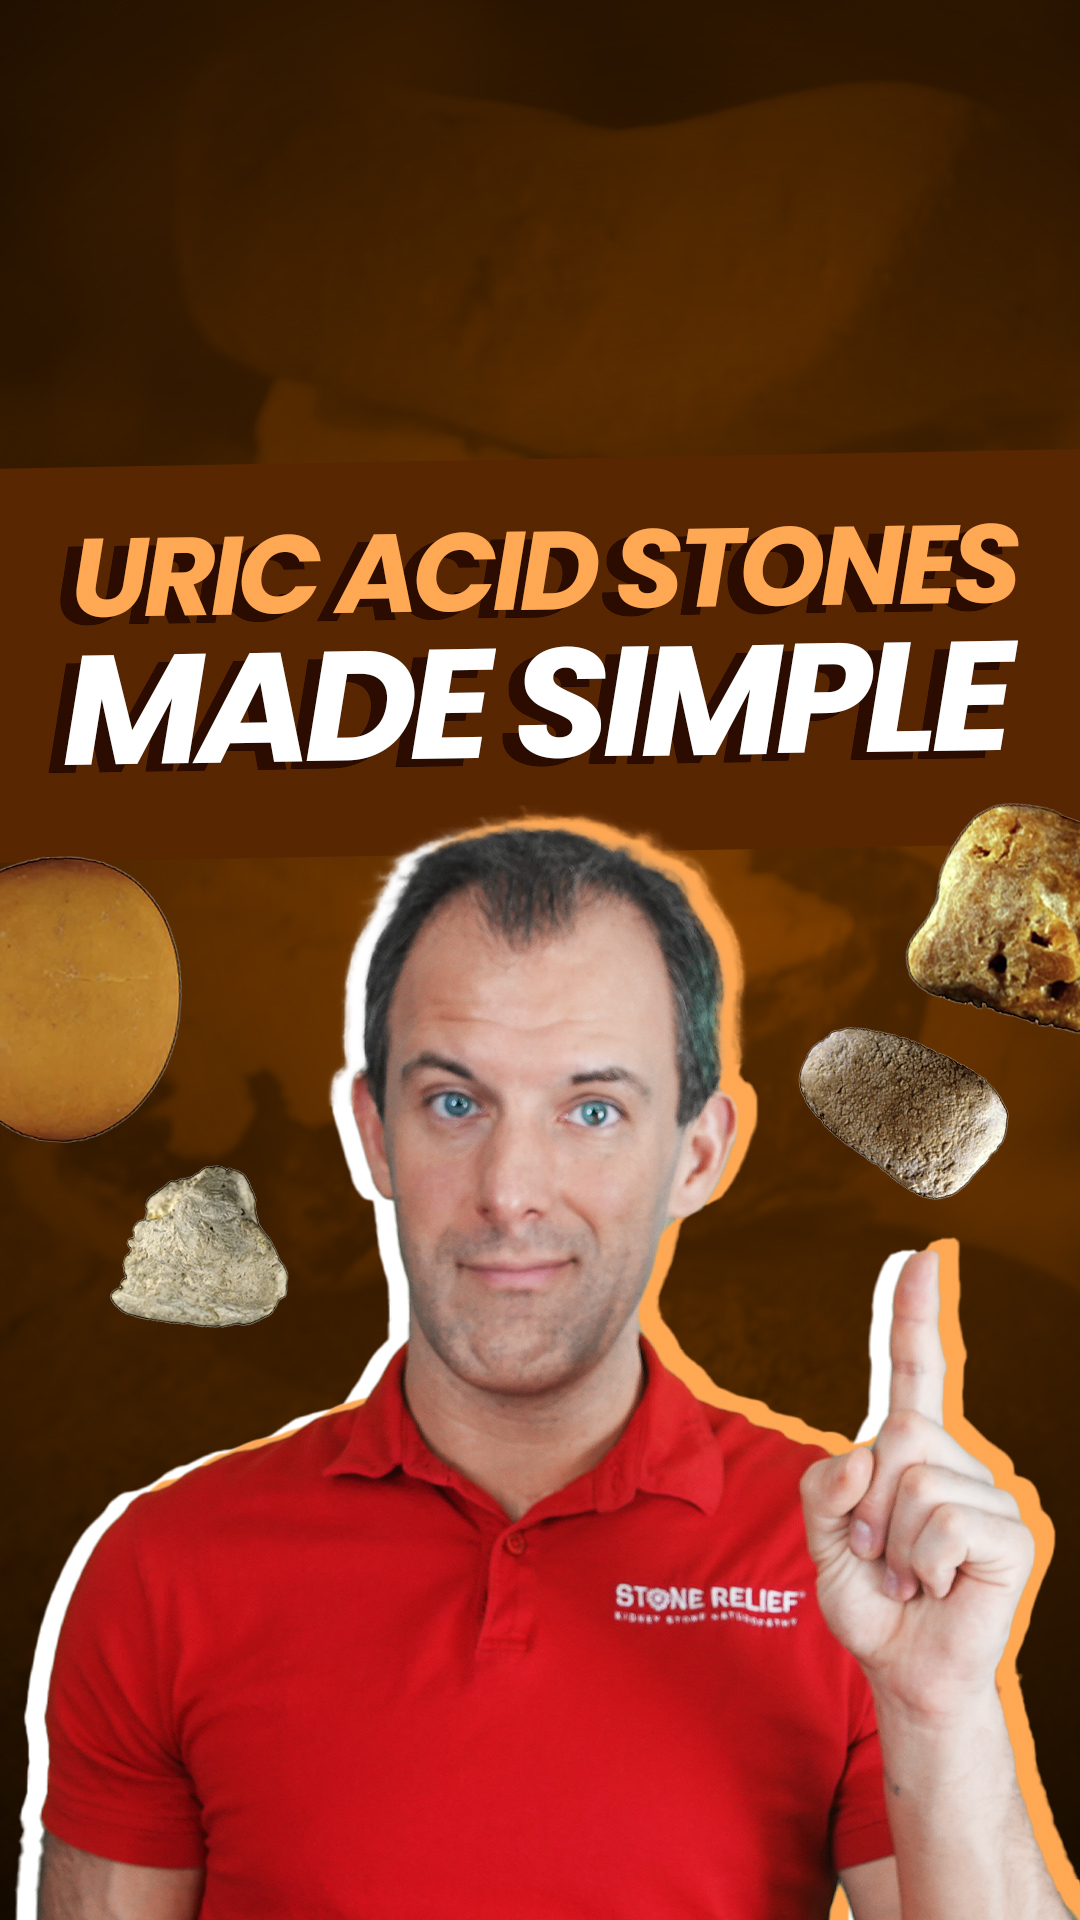 Uric acid stones made simple